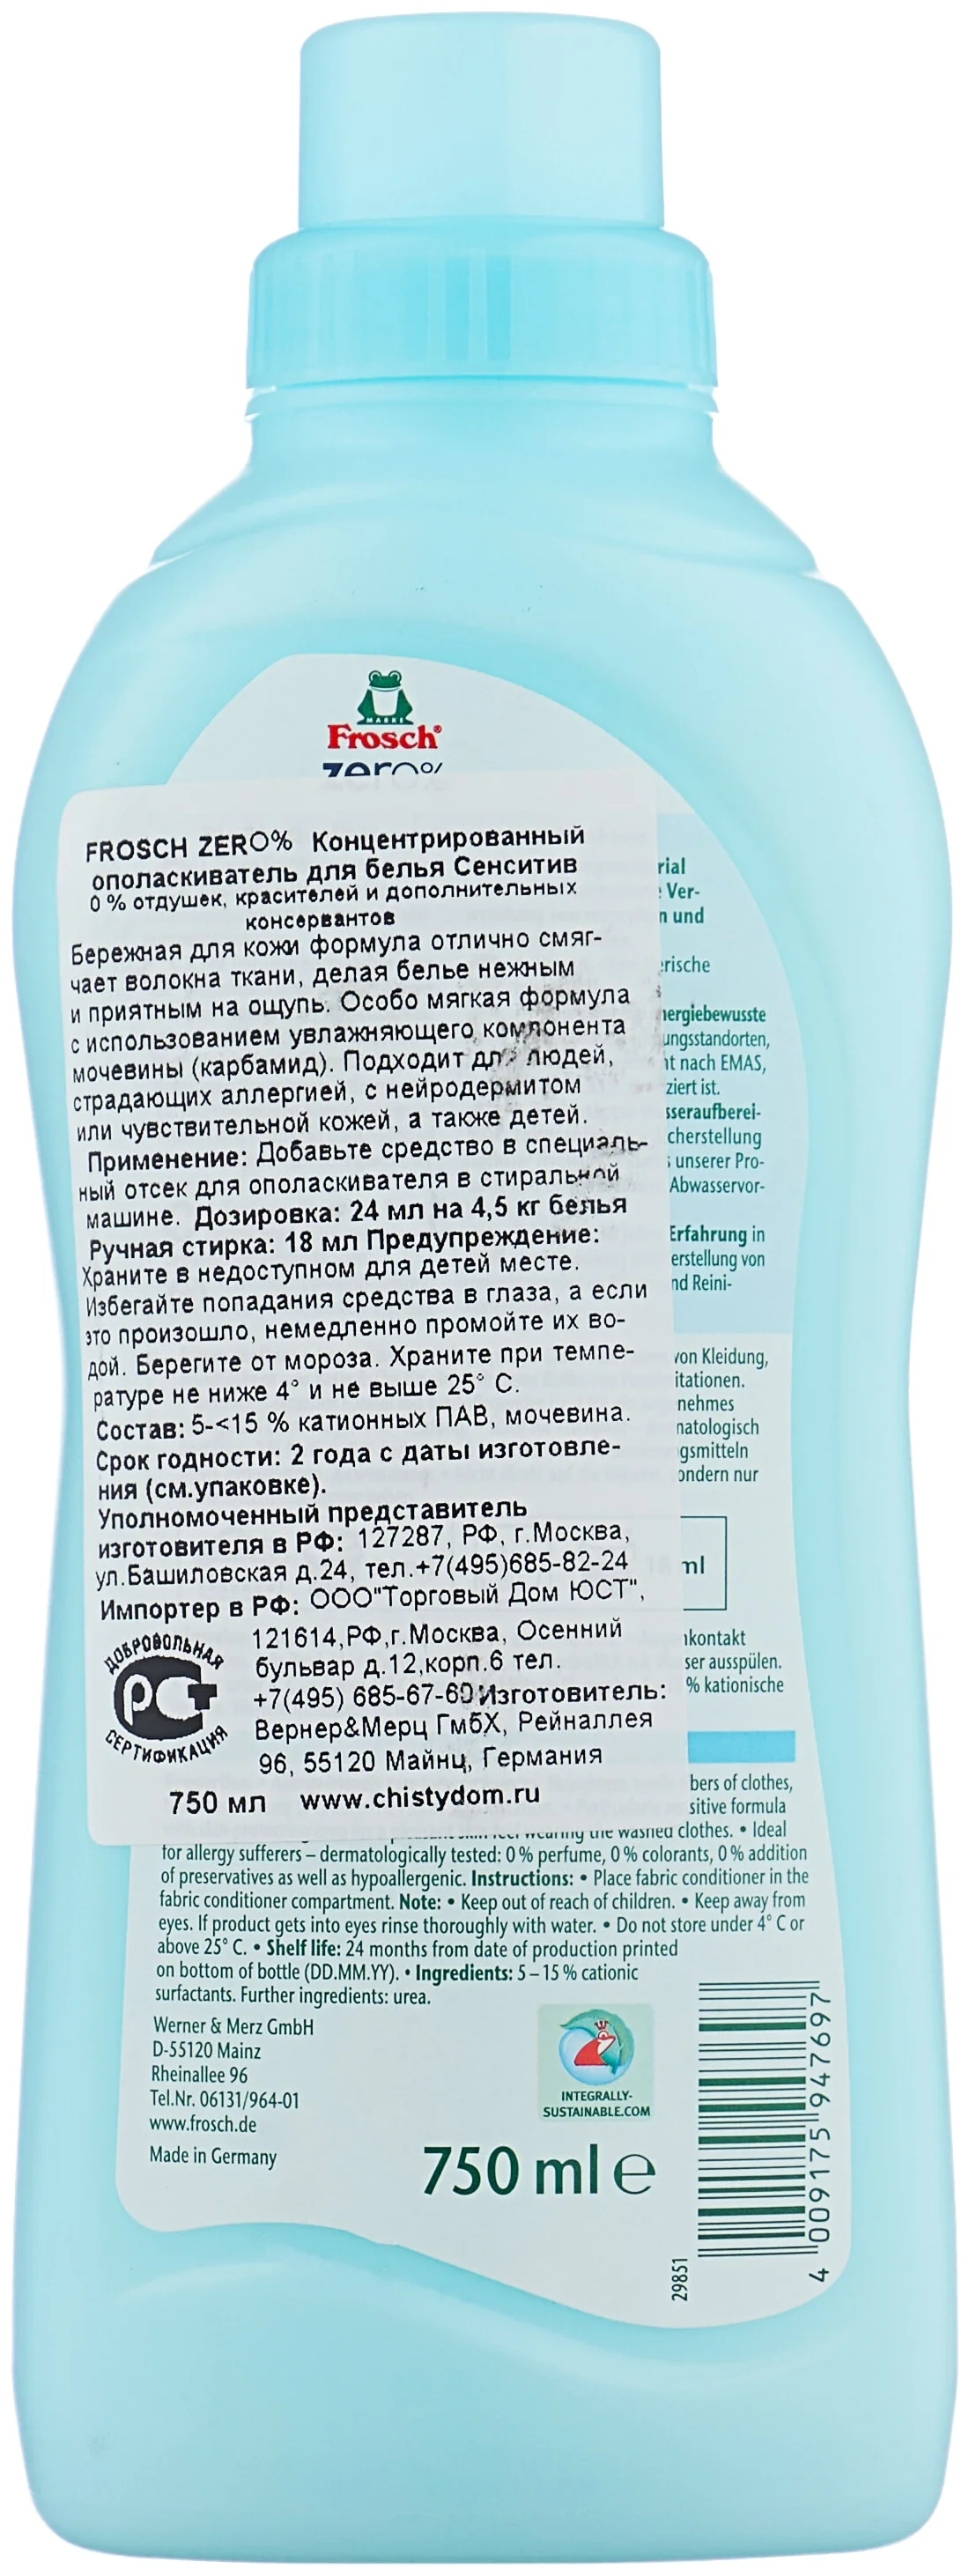 Frosch Zero Sensitiv - особенности: гипоаллергенное, подходит для чувствительной кожи, концентрат